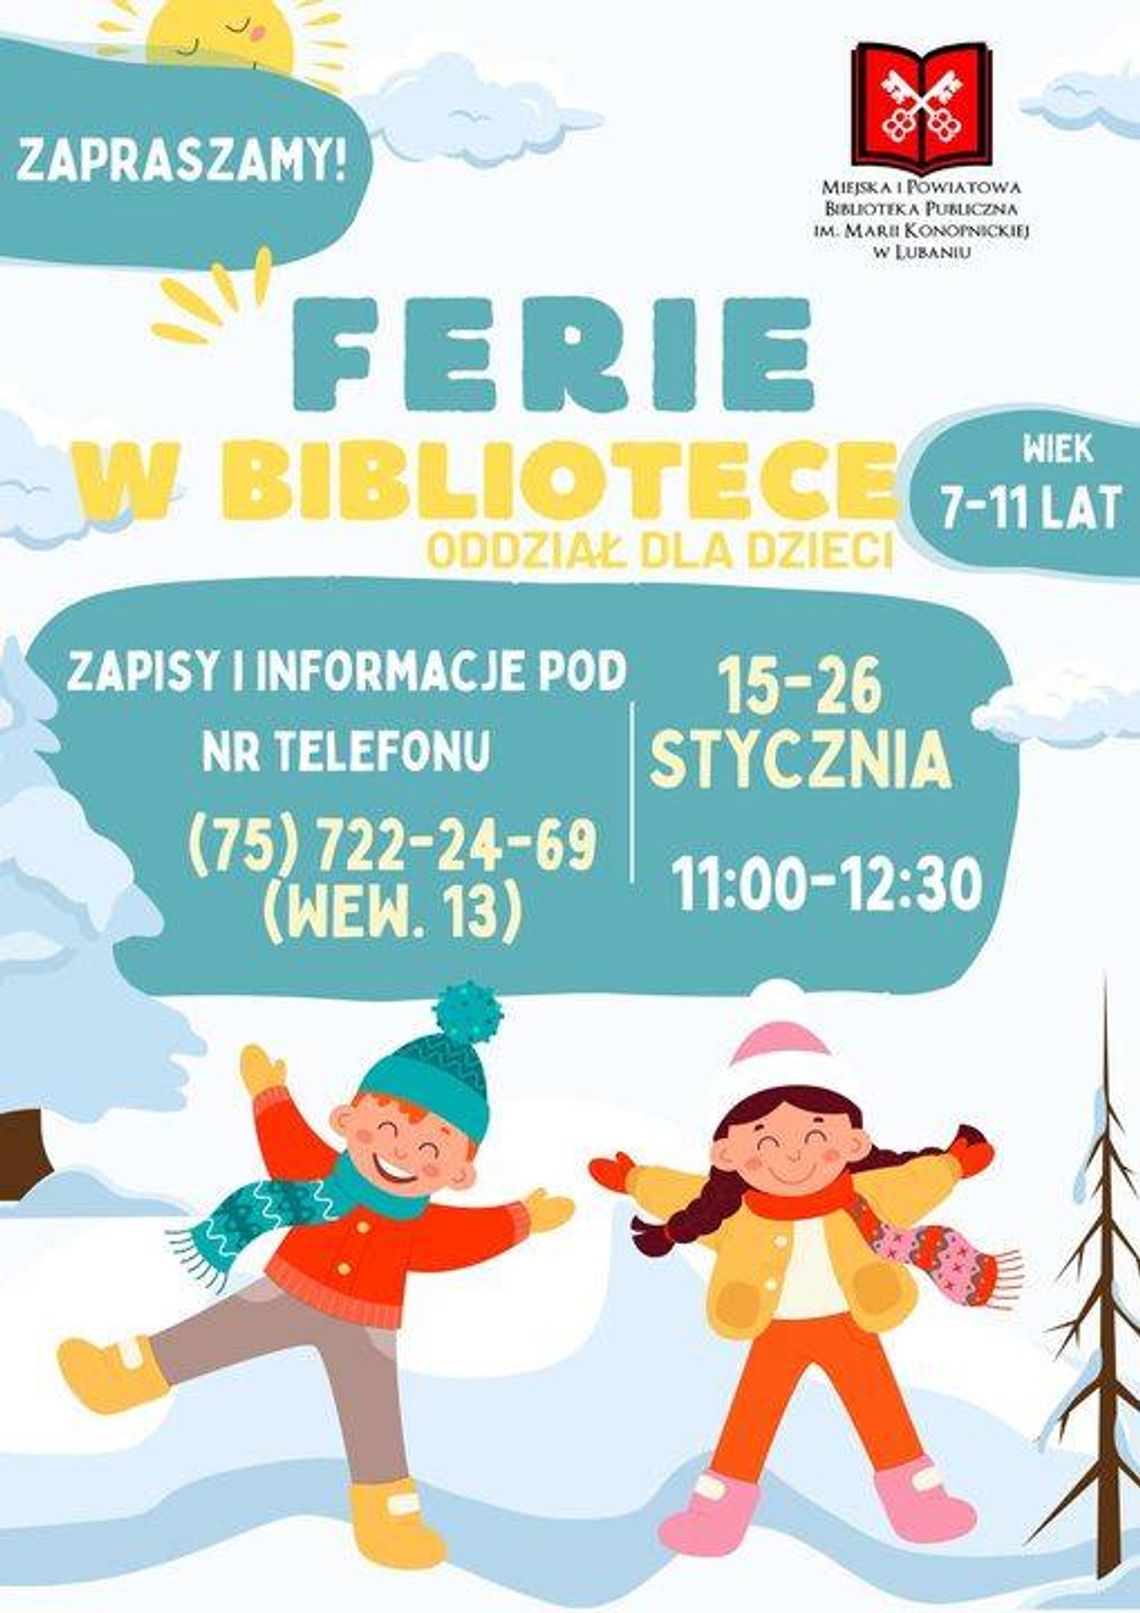 Lubań. Biblioteka zaprasza dzieci na ferie